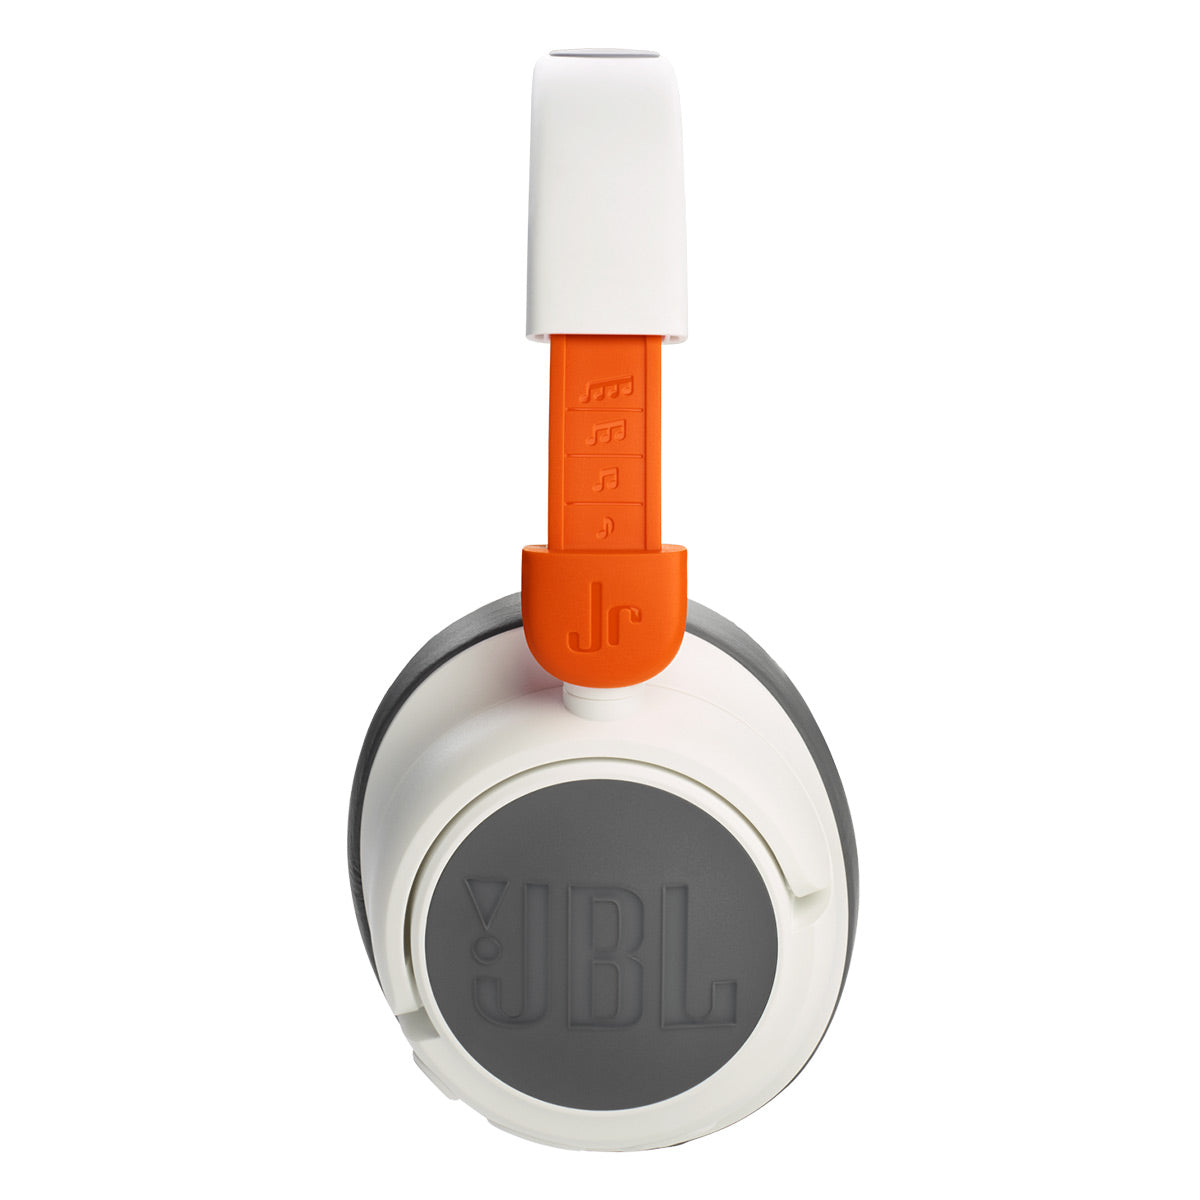 JBL JR460NC Wireless Over-Ear Noise Canceling Kids Headphones (White)